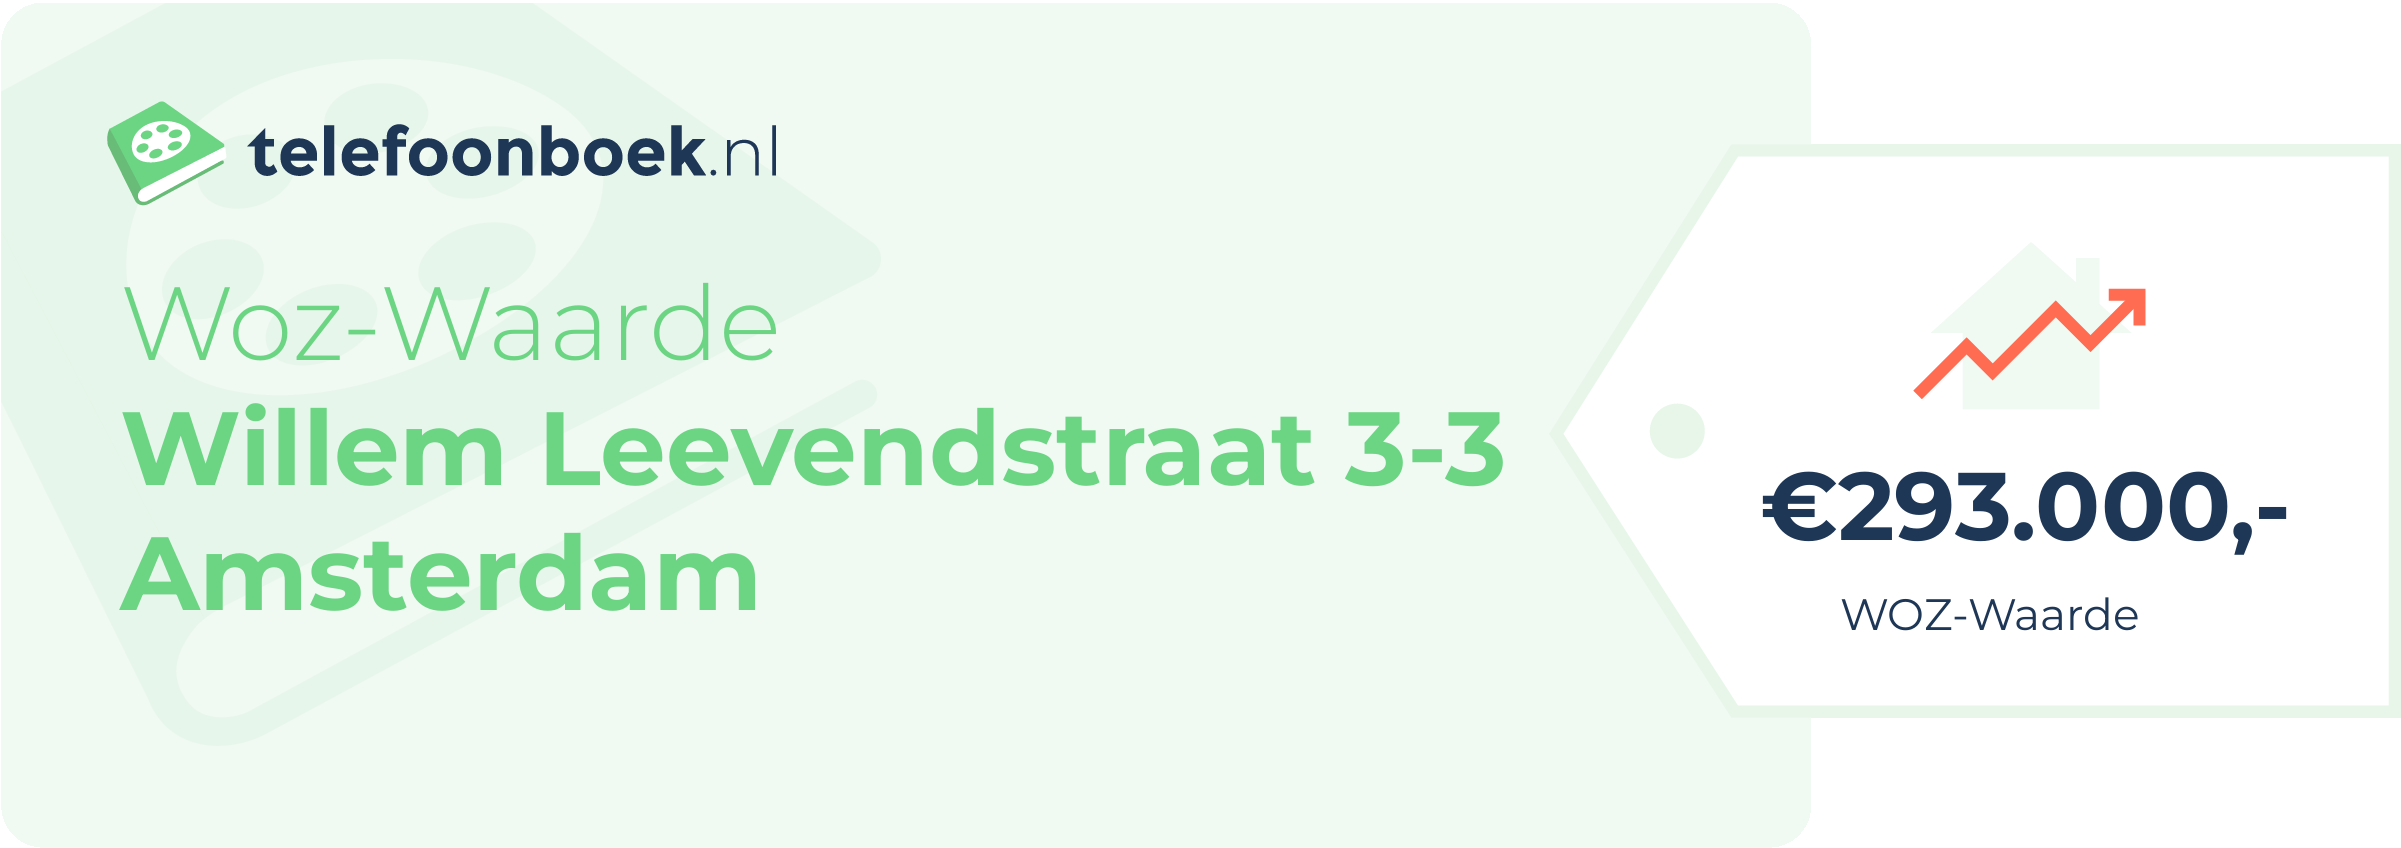 WOZ-waarde Willem Leevendstraat 3-3 Amsterdam